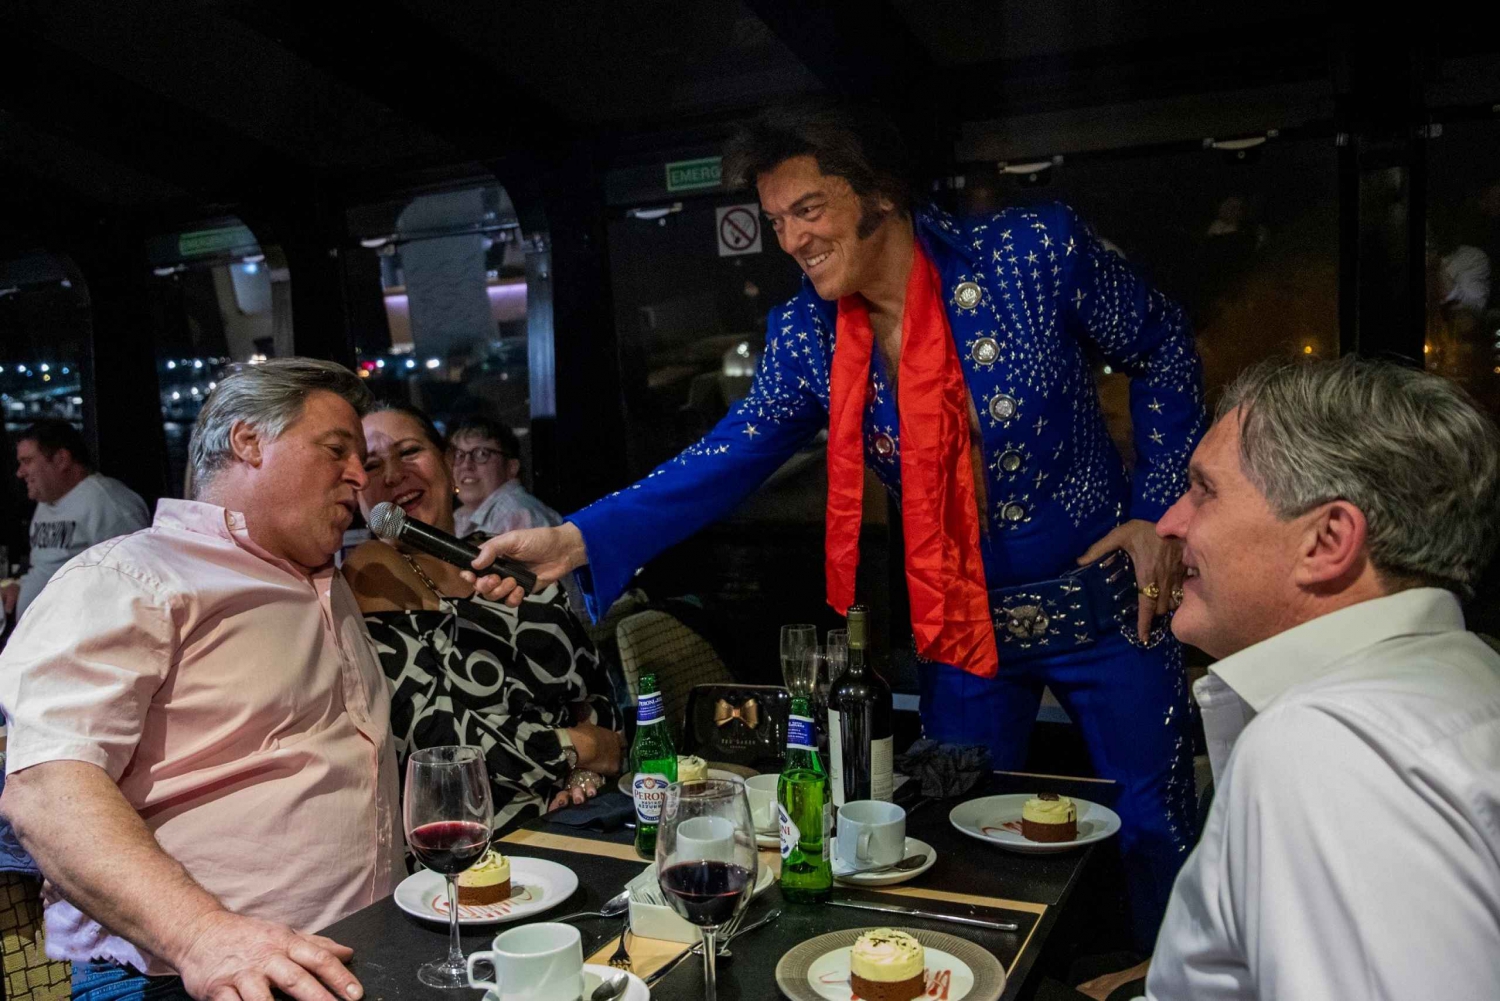 Londres: cruzeiro com jantar com tributo a Elvis no rio Tâmisa